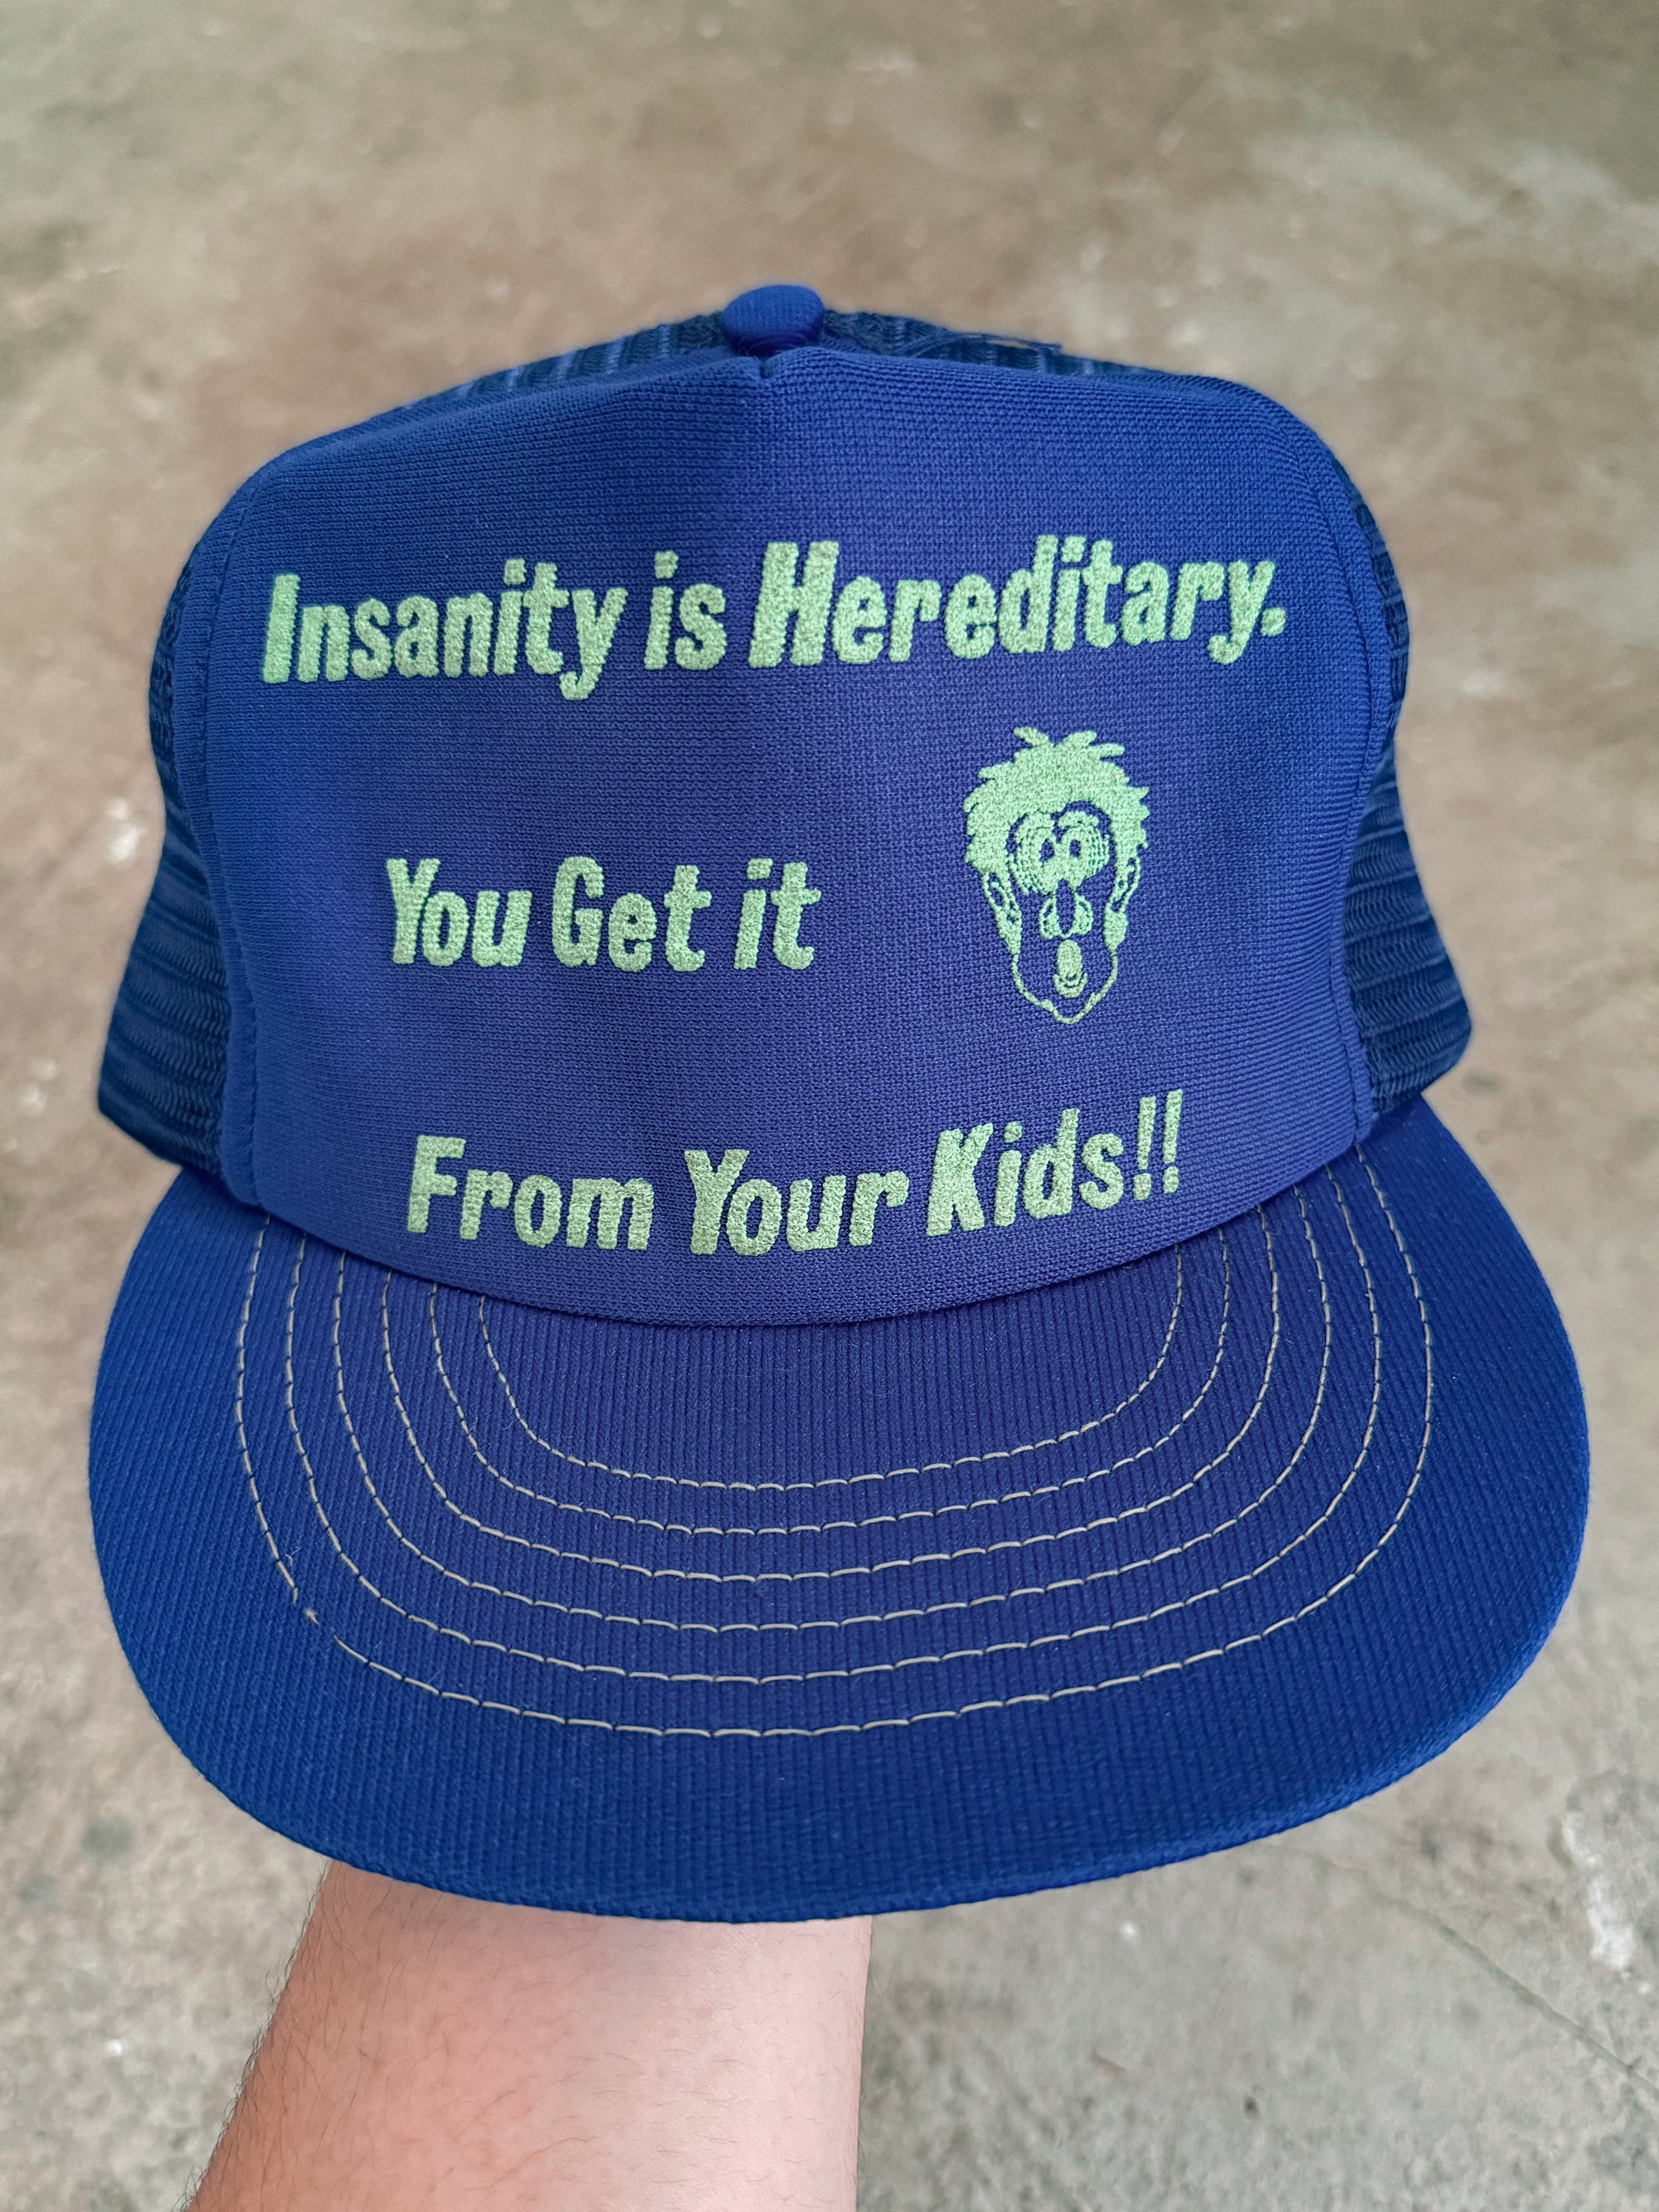 1980s "Insanity is Hereditary" Trucker Hat